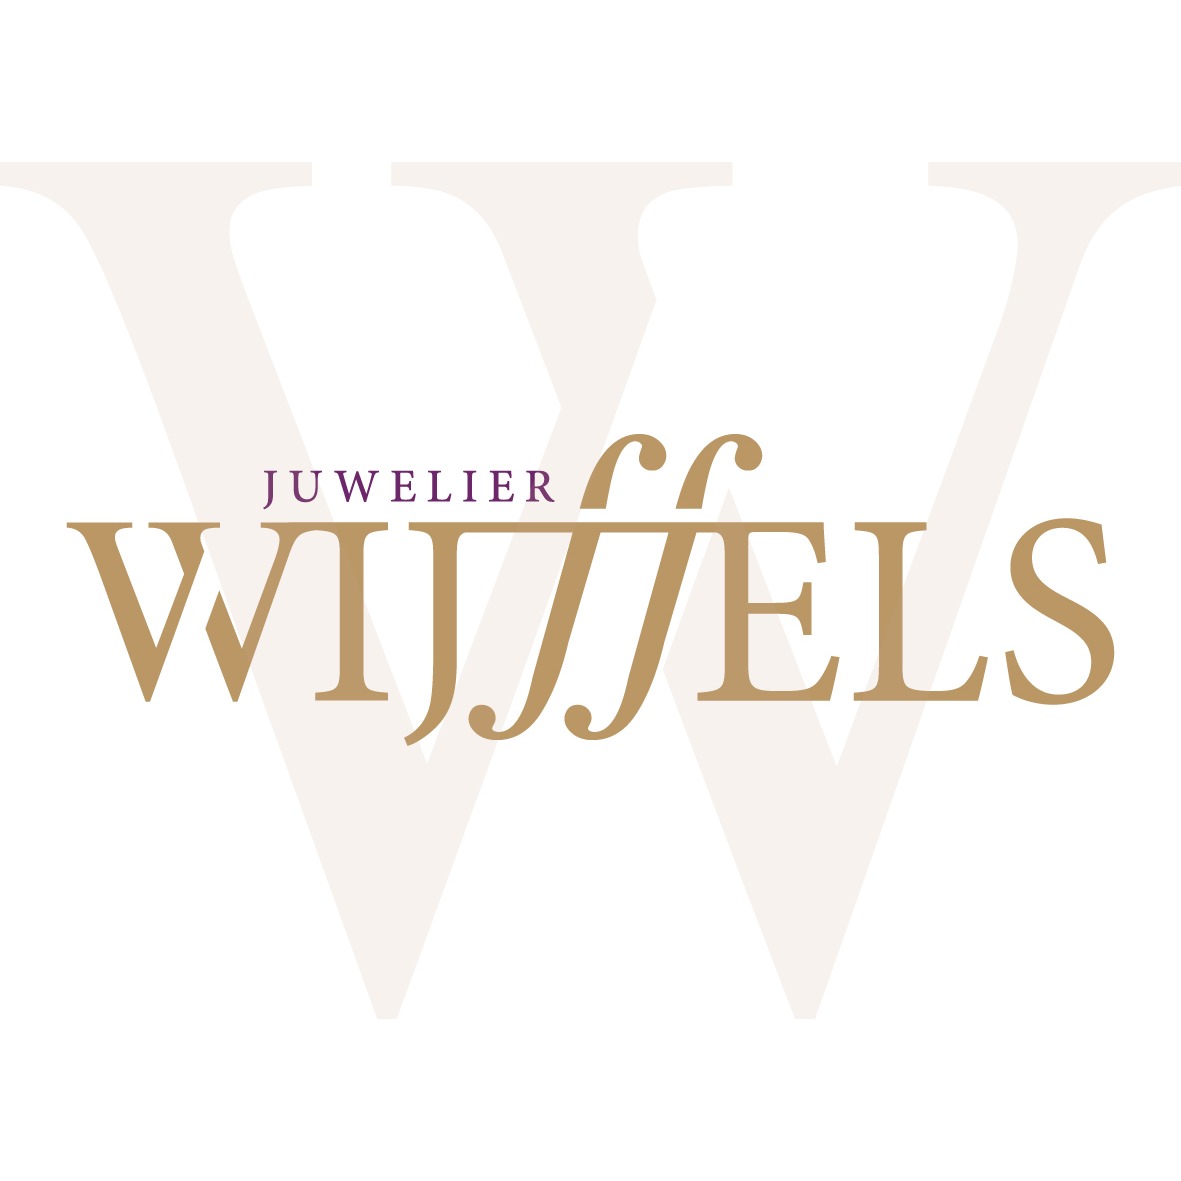 Juwelier Wijffels - JUWELIERS, HORLOGEMAKERS (KLEINHANDEL), Terneuzen - Juwelier Wijffels Terneuzen - 0115648... - NL100714425 - Infobel.NL